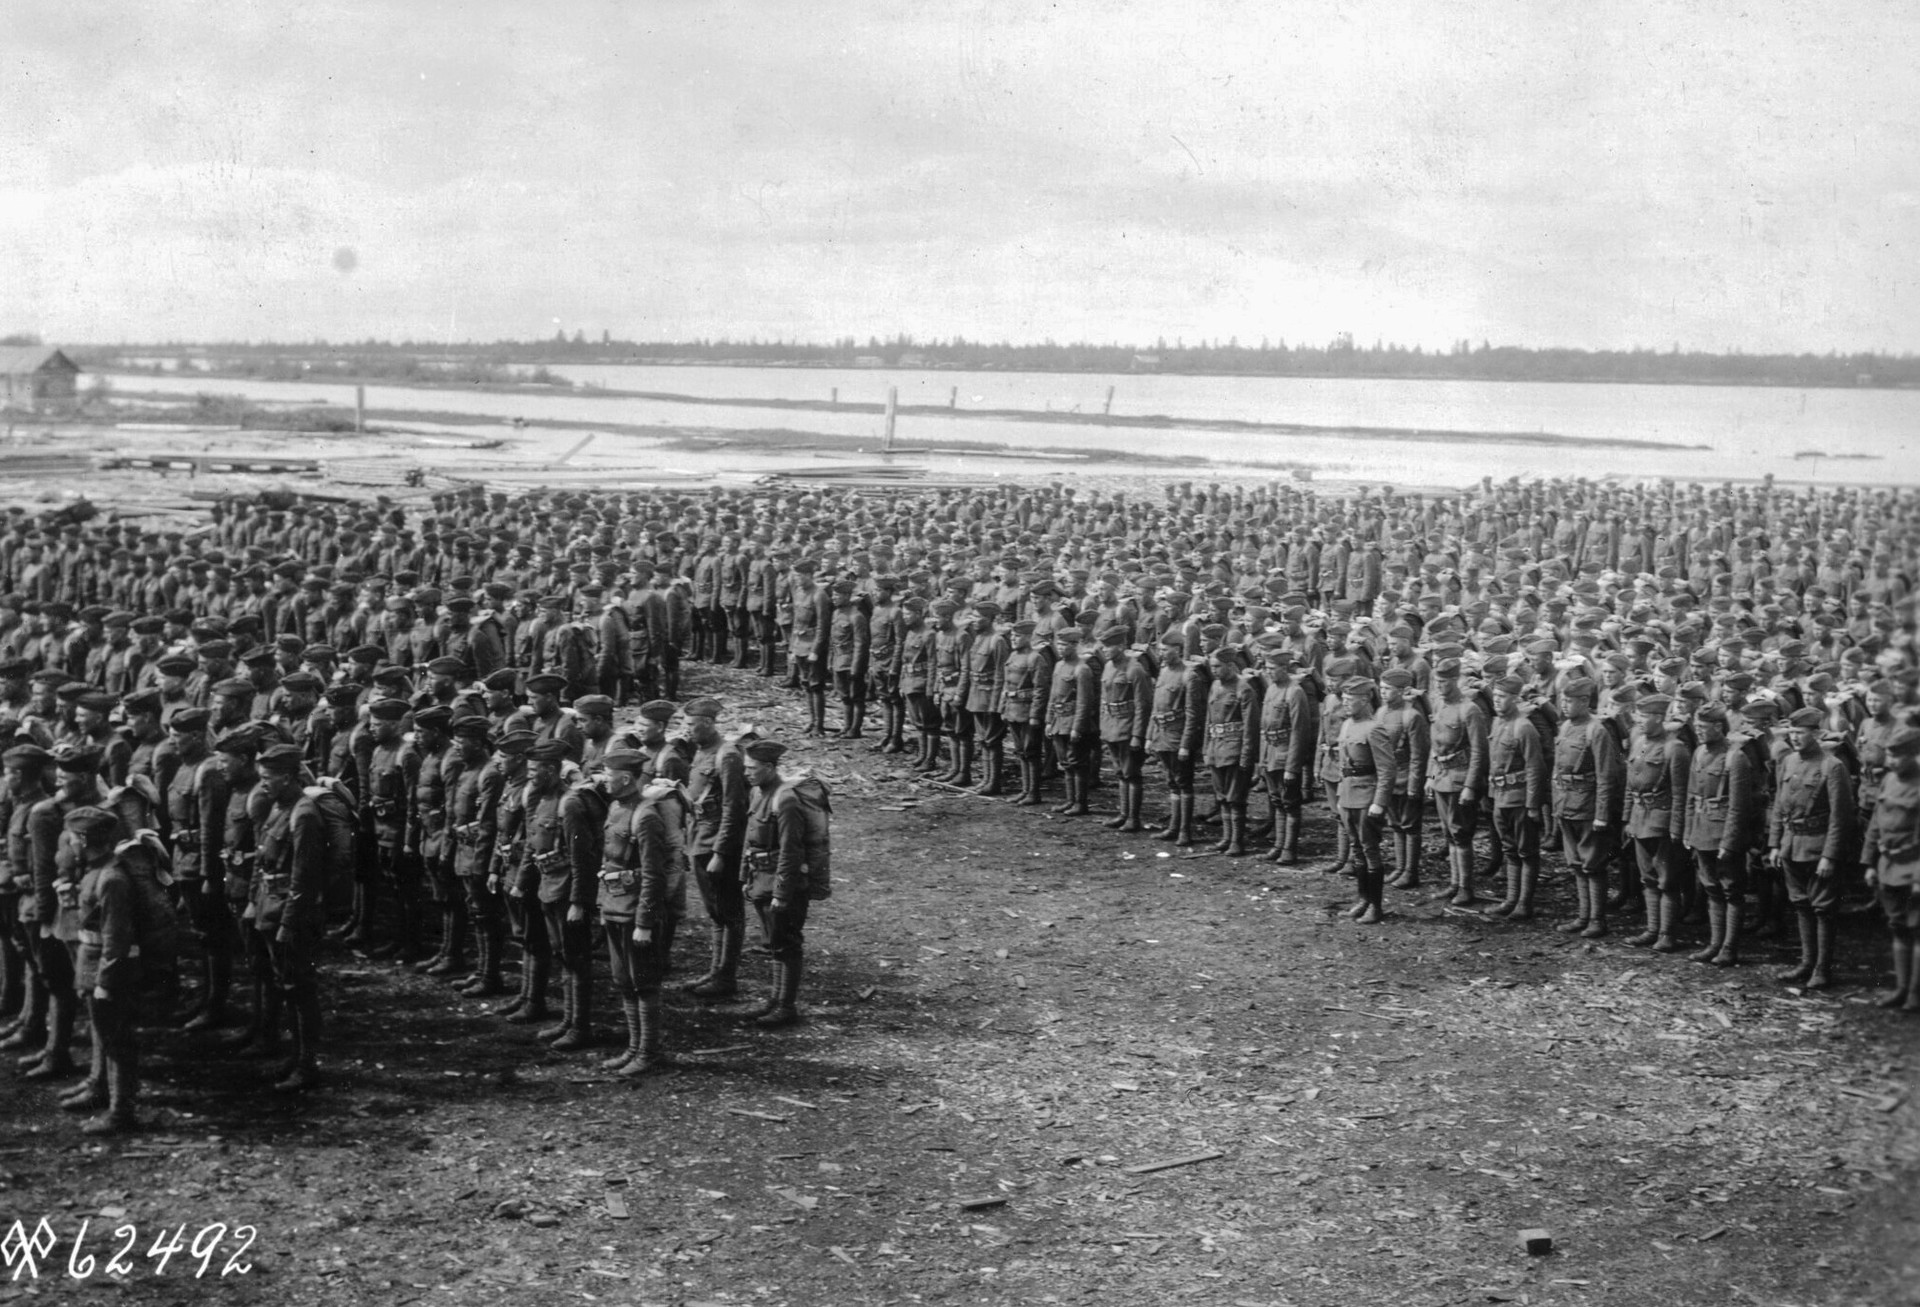 Les troupes américaines font la queue pour inspection avant de quitter la Russie soviétique en juin 1919